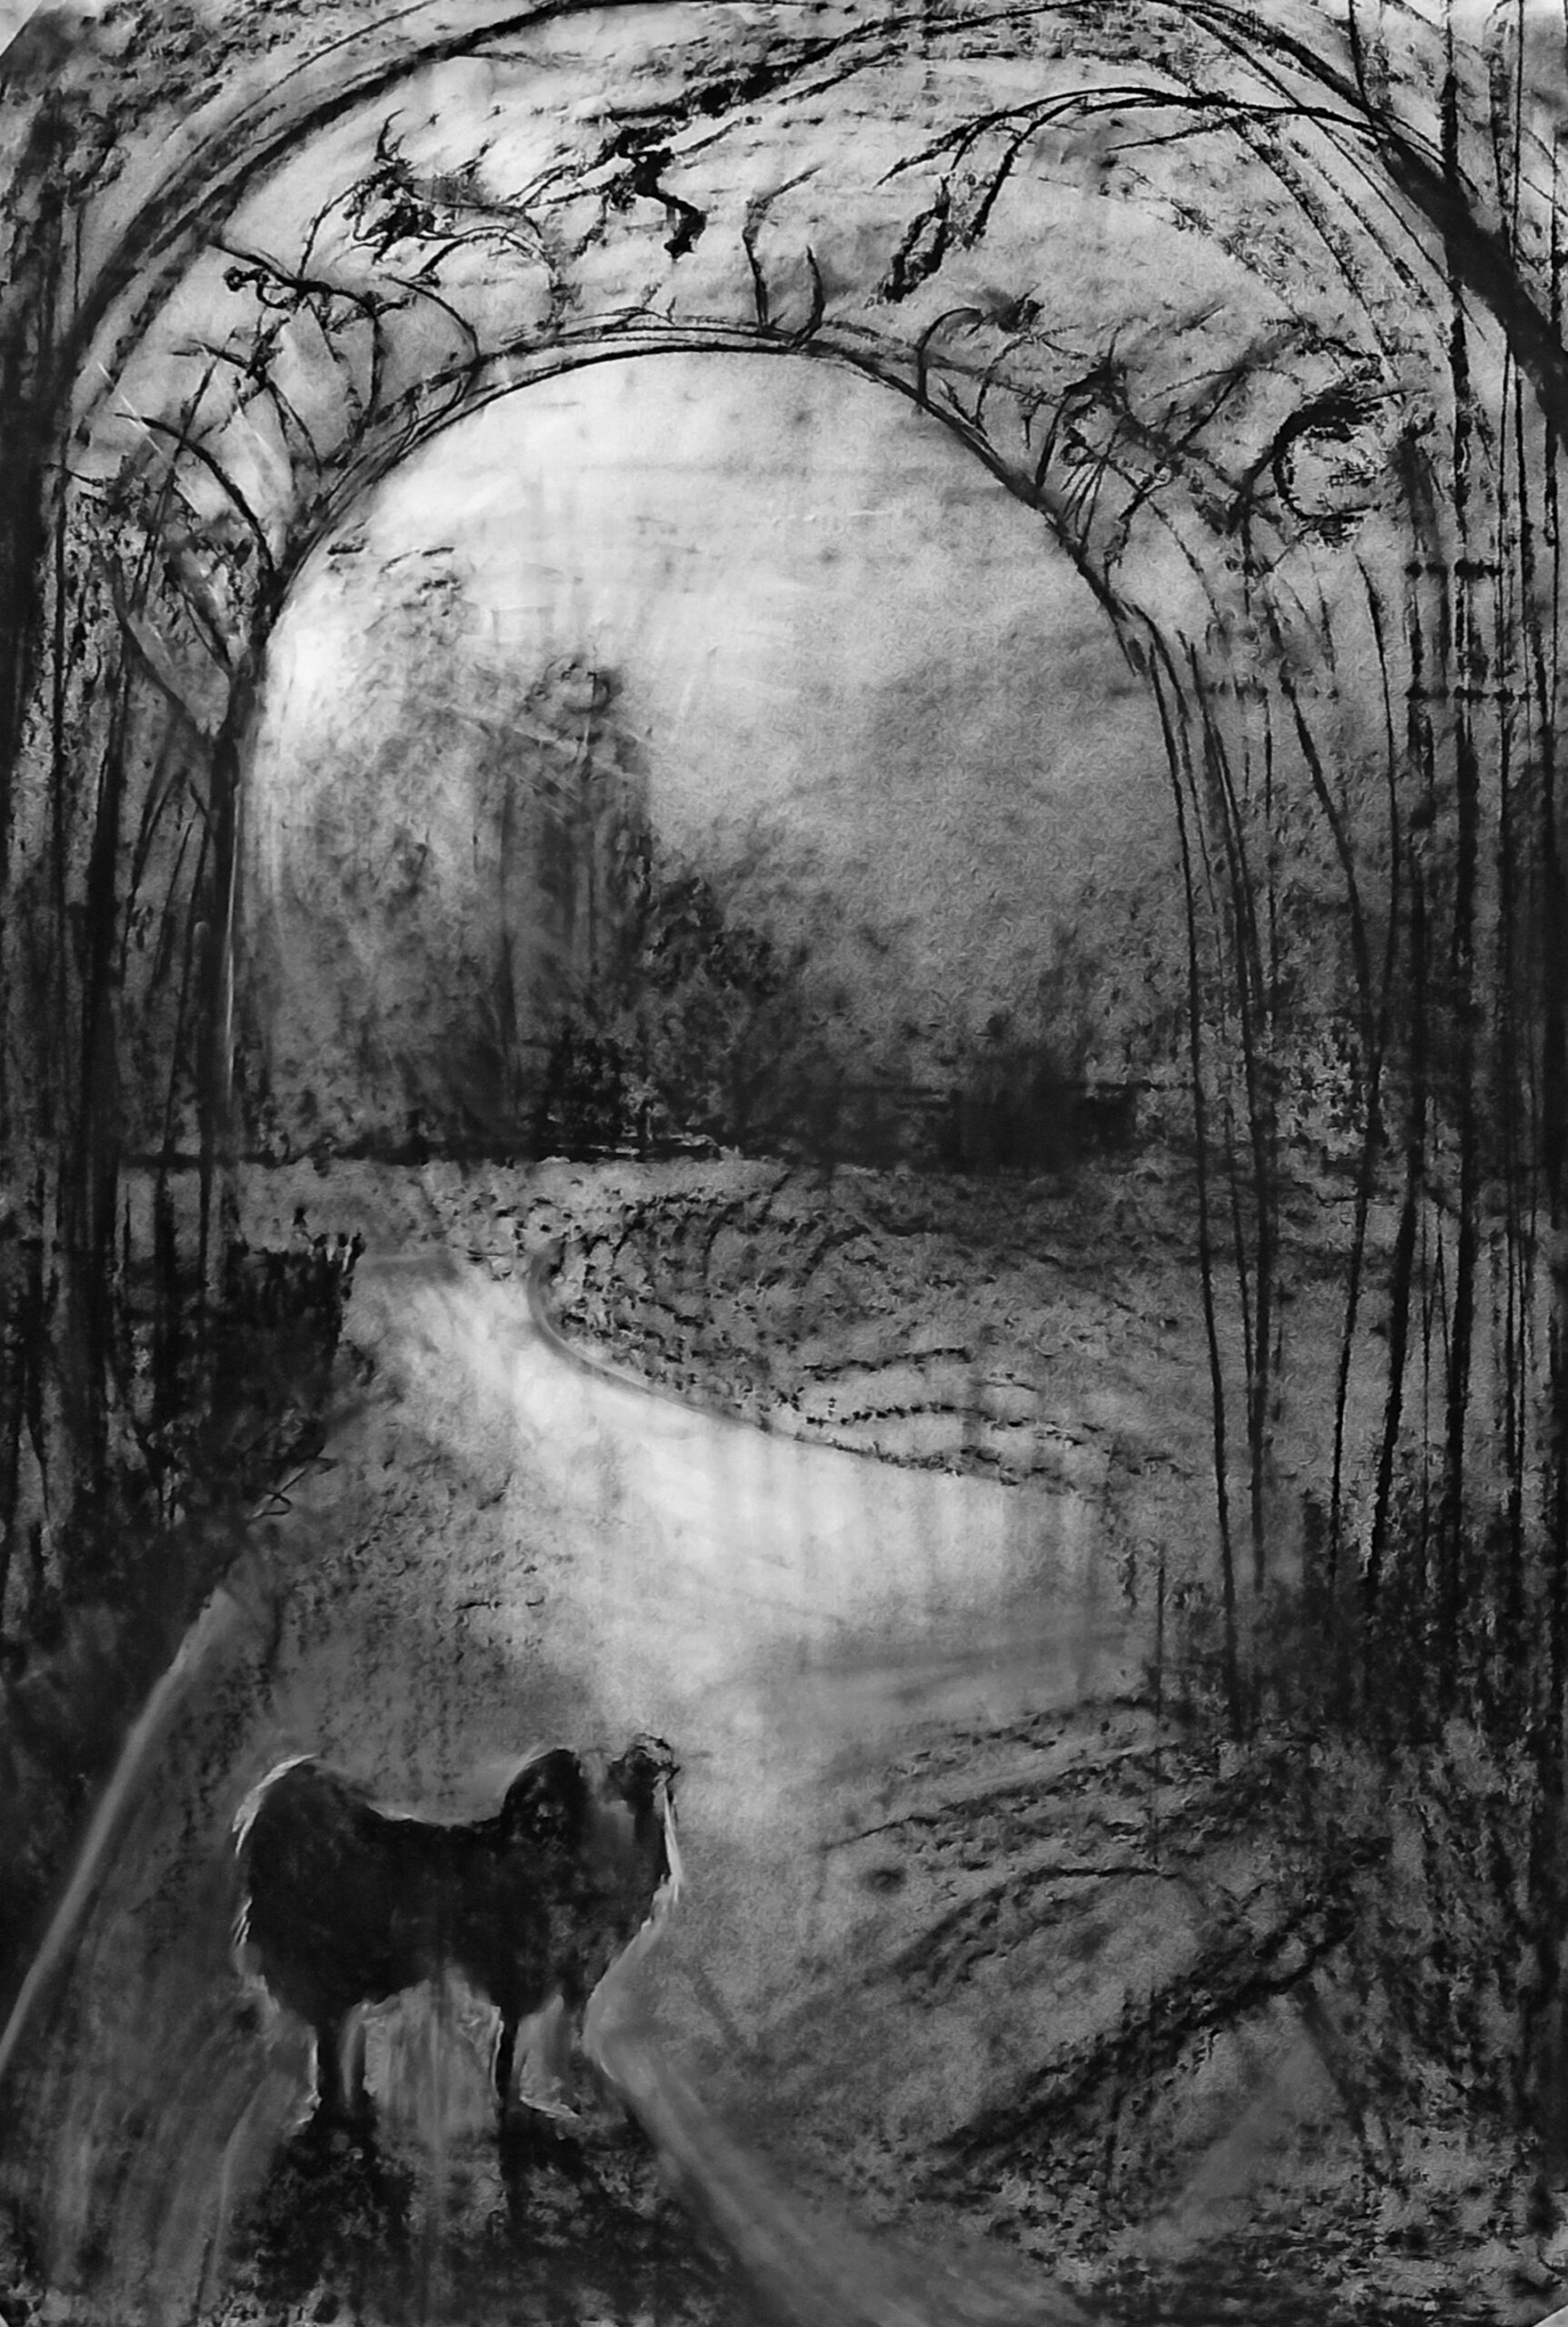 Rysunek wykonany węglem na białym brystolu przestawiający widzianego pod światło małego psa stojącego w ażurowej arkadzie parkowej pergoli. Pies zdaje się czekać na właściciela.